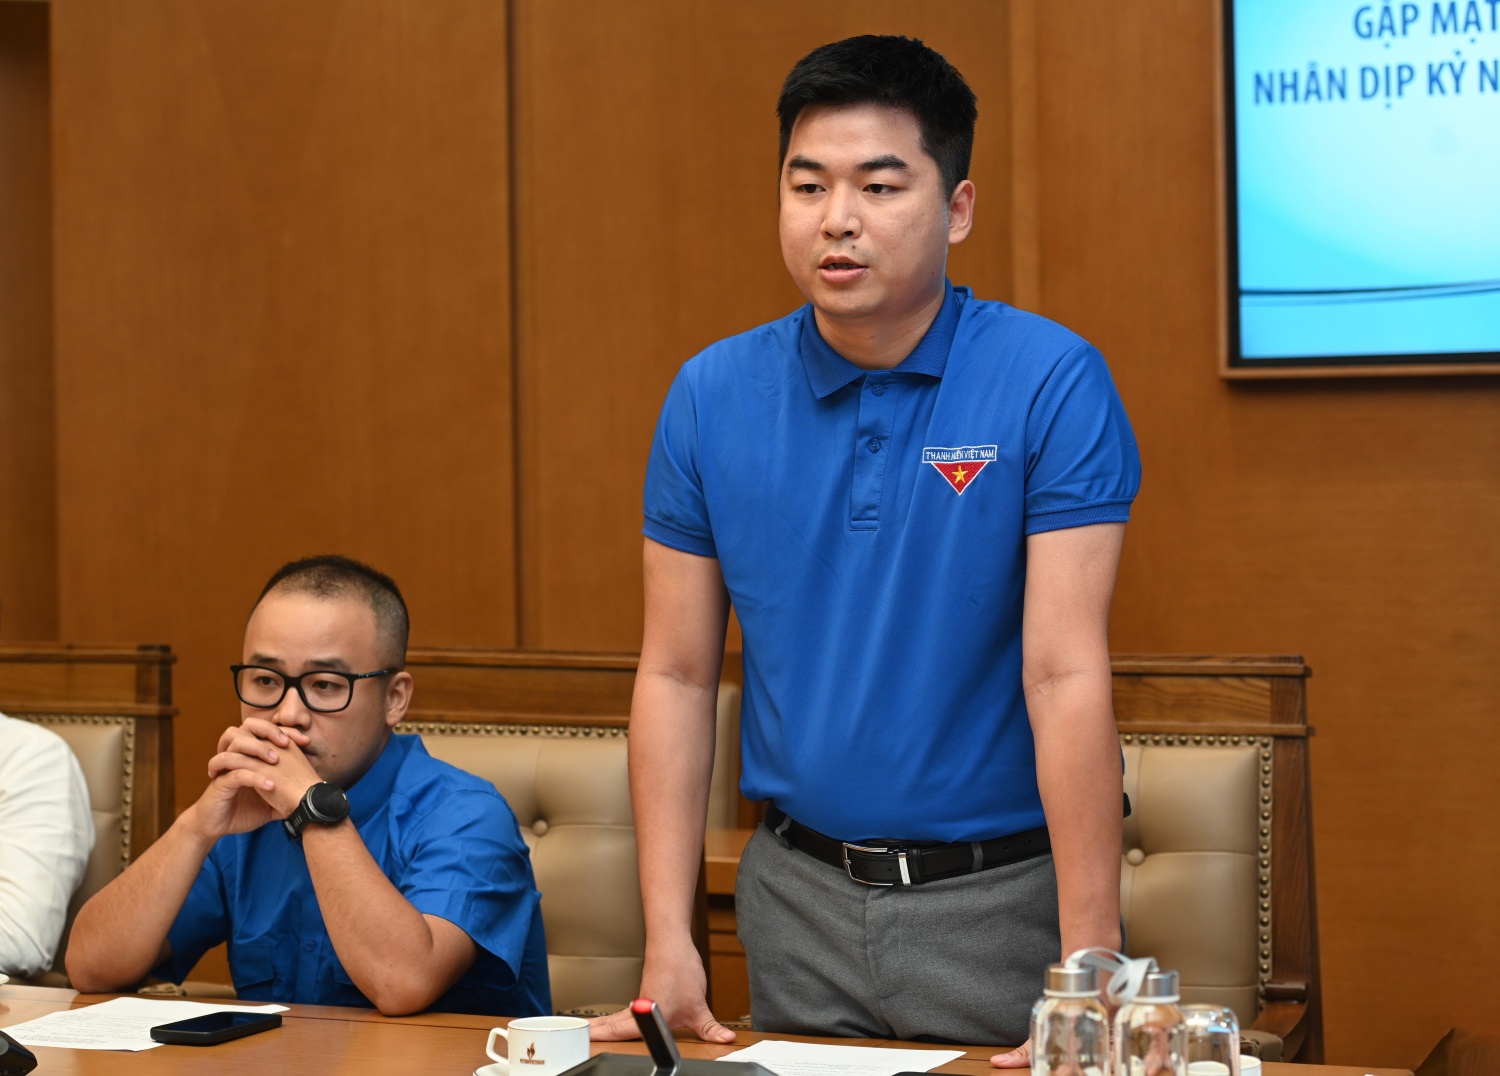 Đồng chí Phạm Hồng Sơn - Phụ trách Đoàn Thanh niên Cơ quan Tập đoàn chia sẻ tại buổi gặp mặt